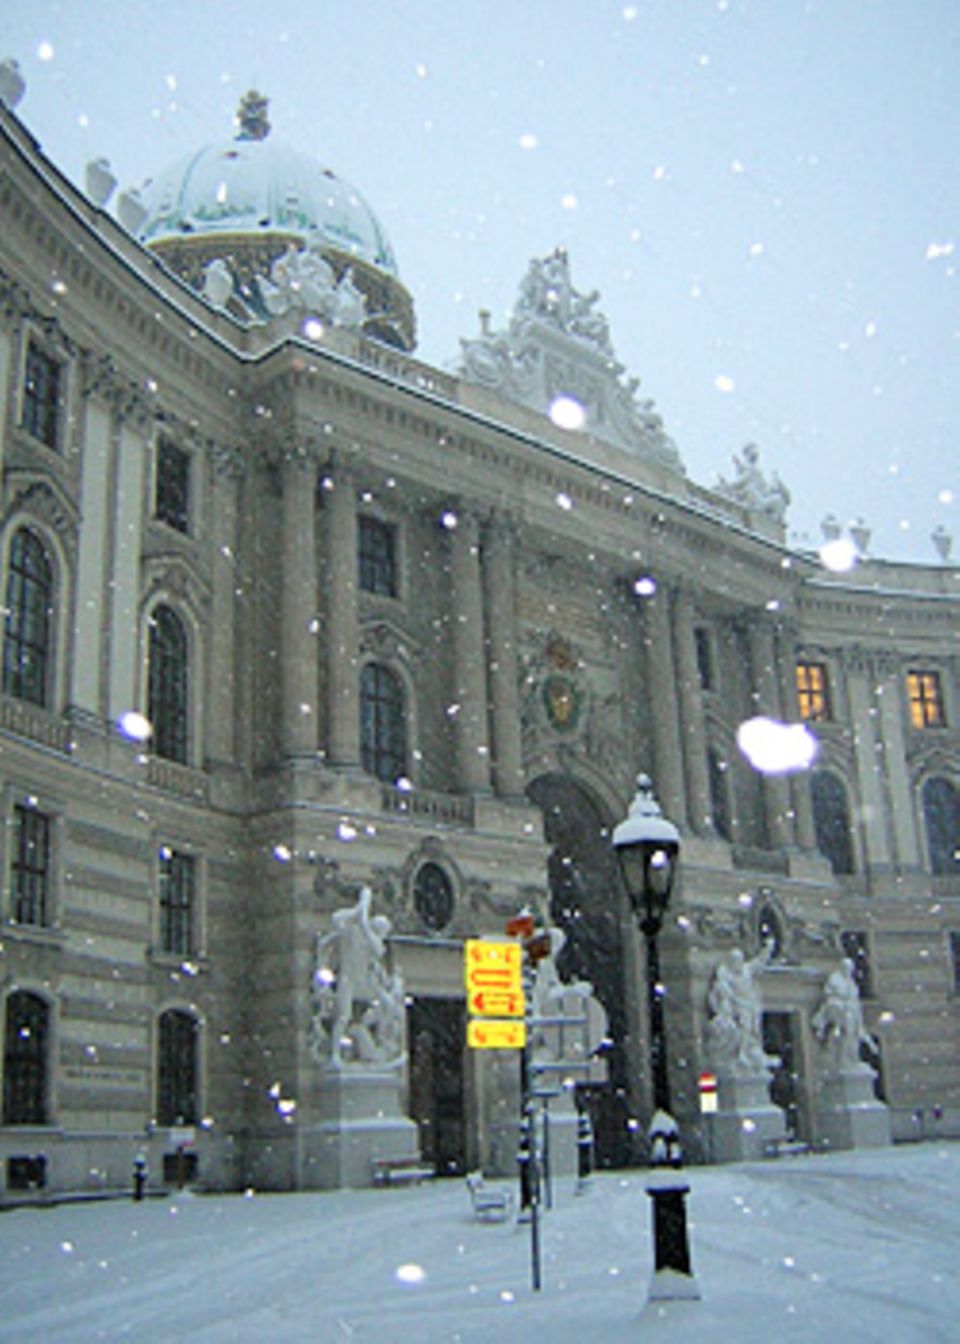 Wien im Winter: Ein kulinarischer Spaziergang